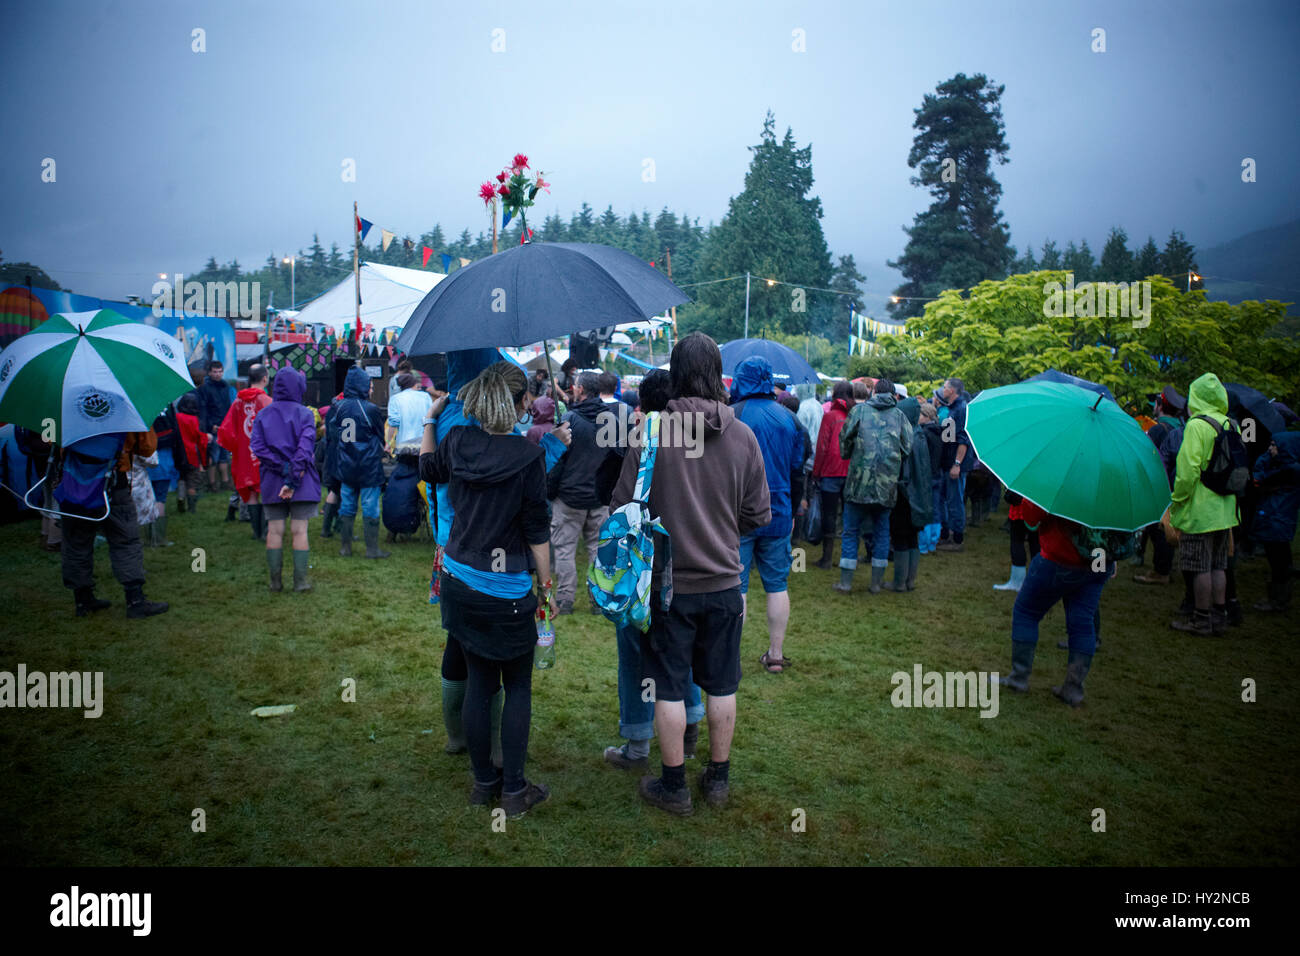 Menschen, die gerade eine live-Band stehen unter einem Regenschirm mit  Blumen auf Spitze, Green Man-Festival, Wales Stockfotografie - Alamy